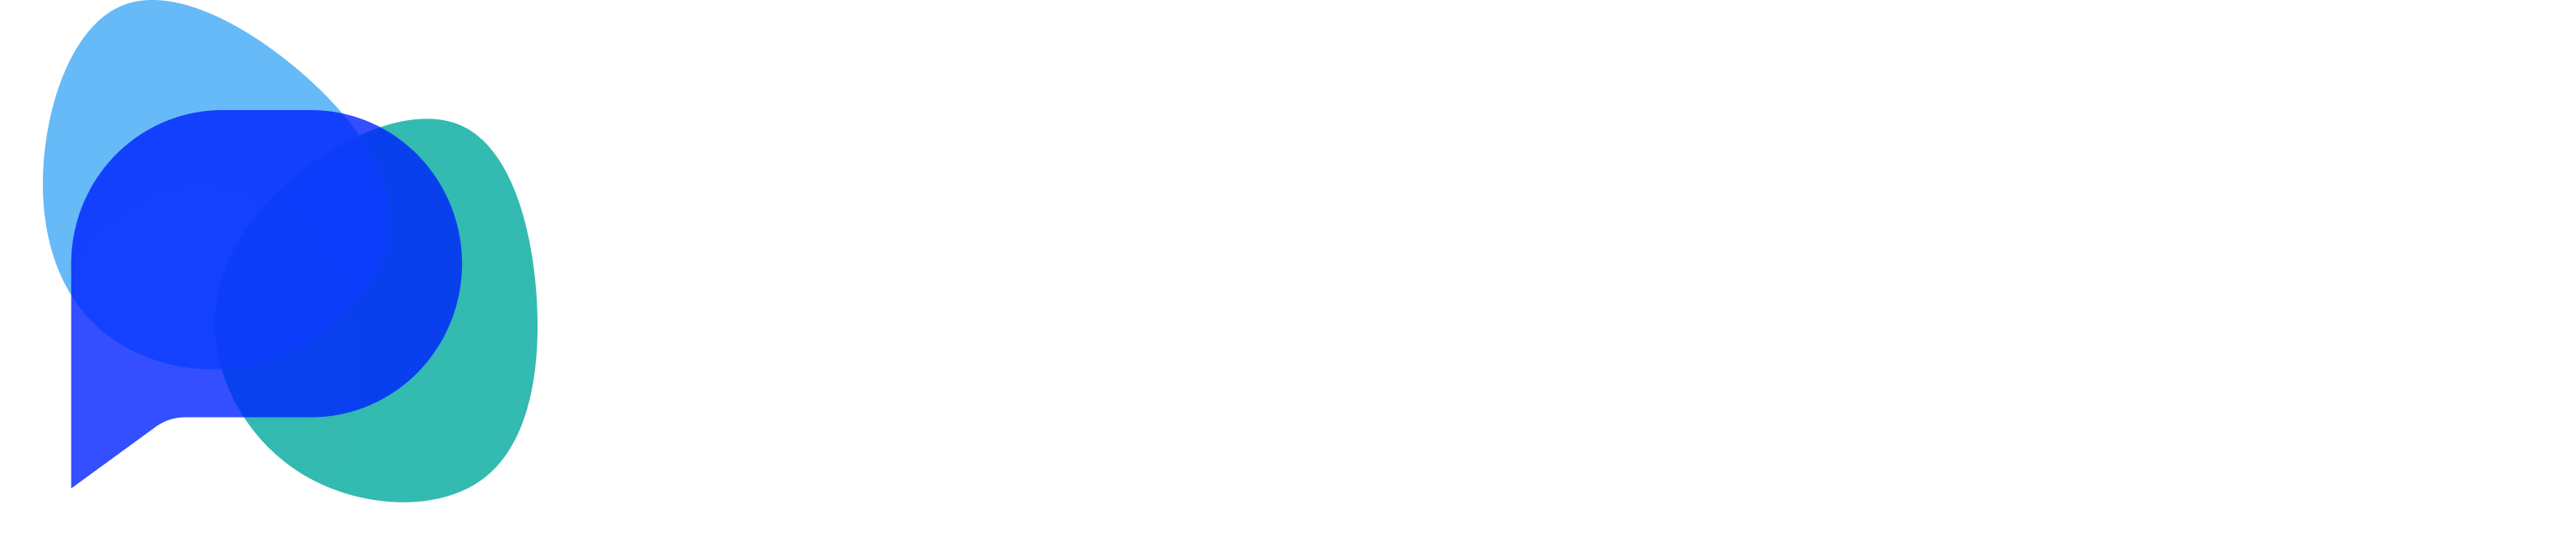 OpenDialog logo